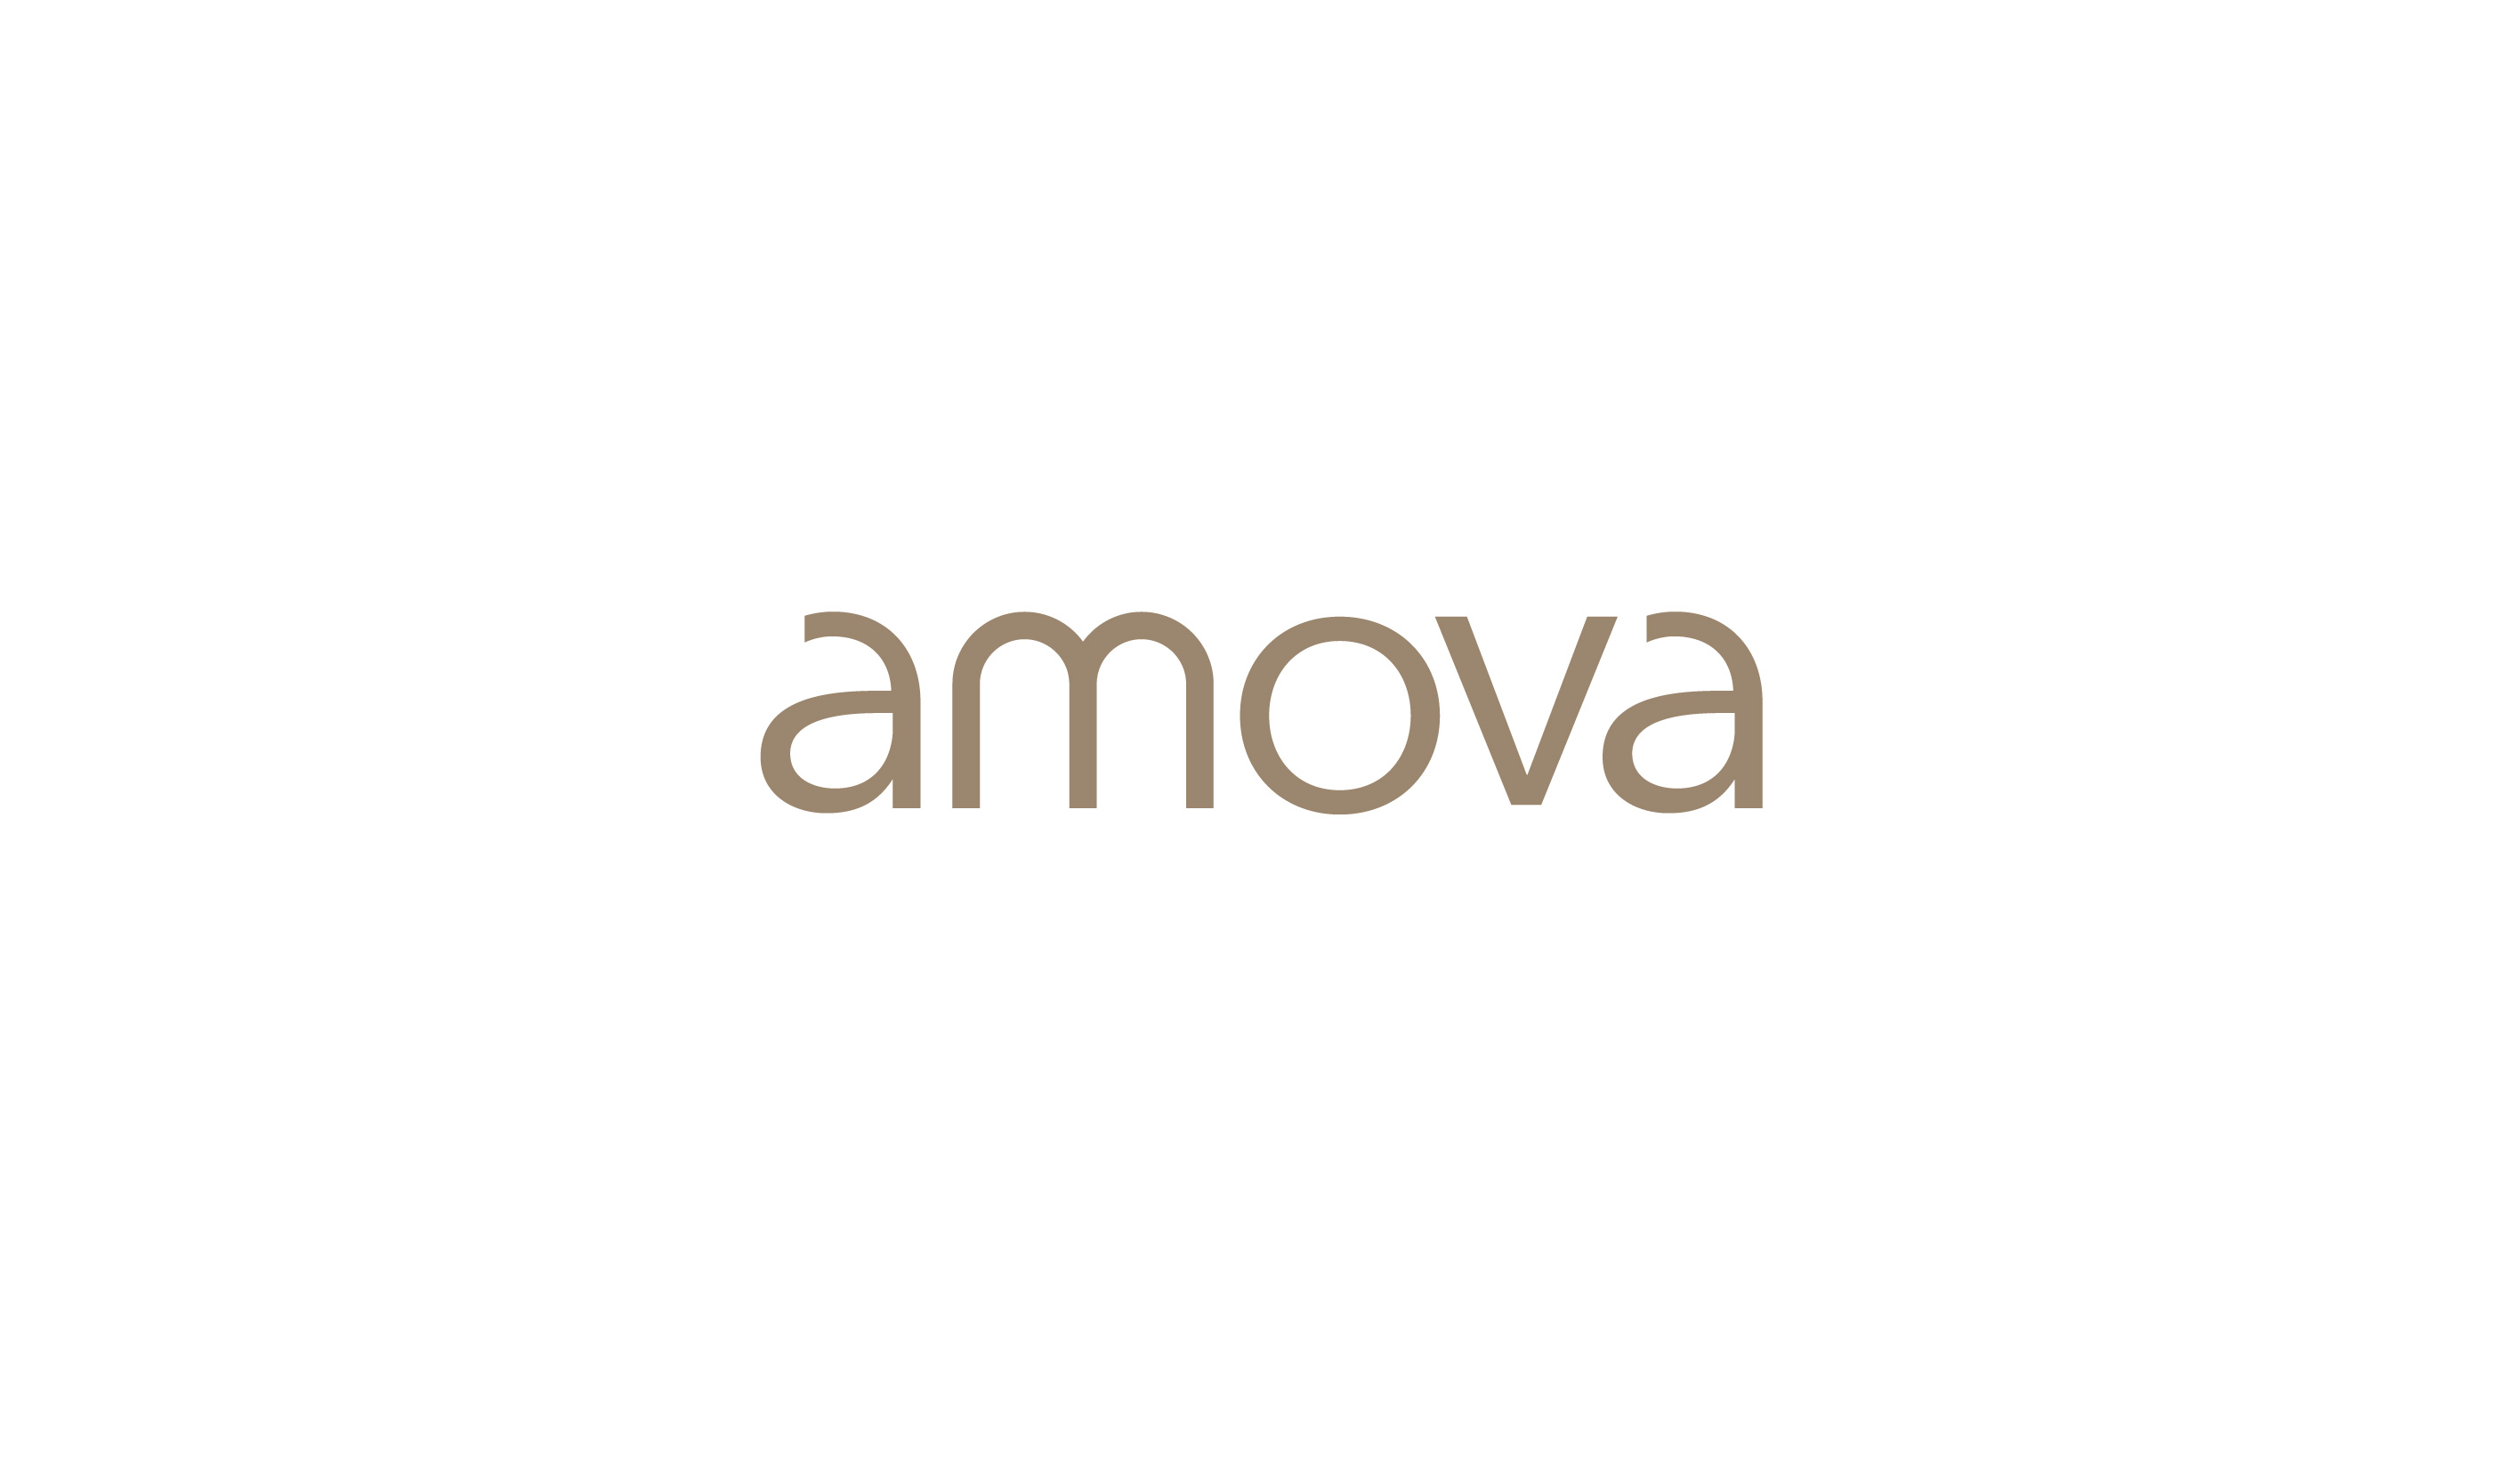 Amova: Visual Identity